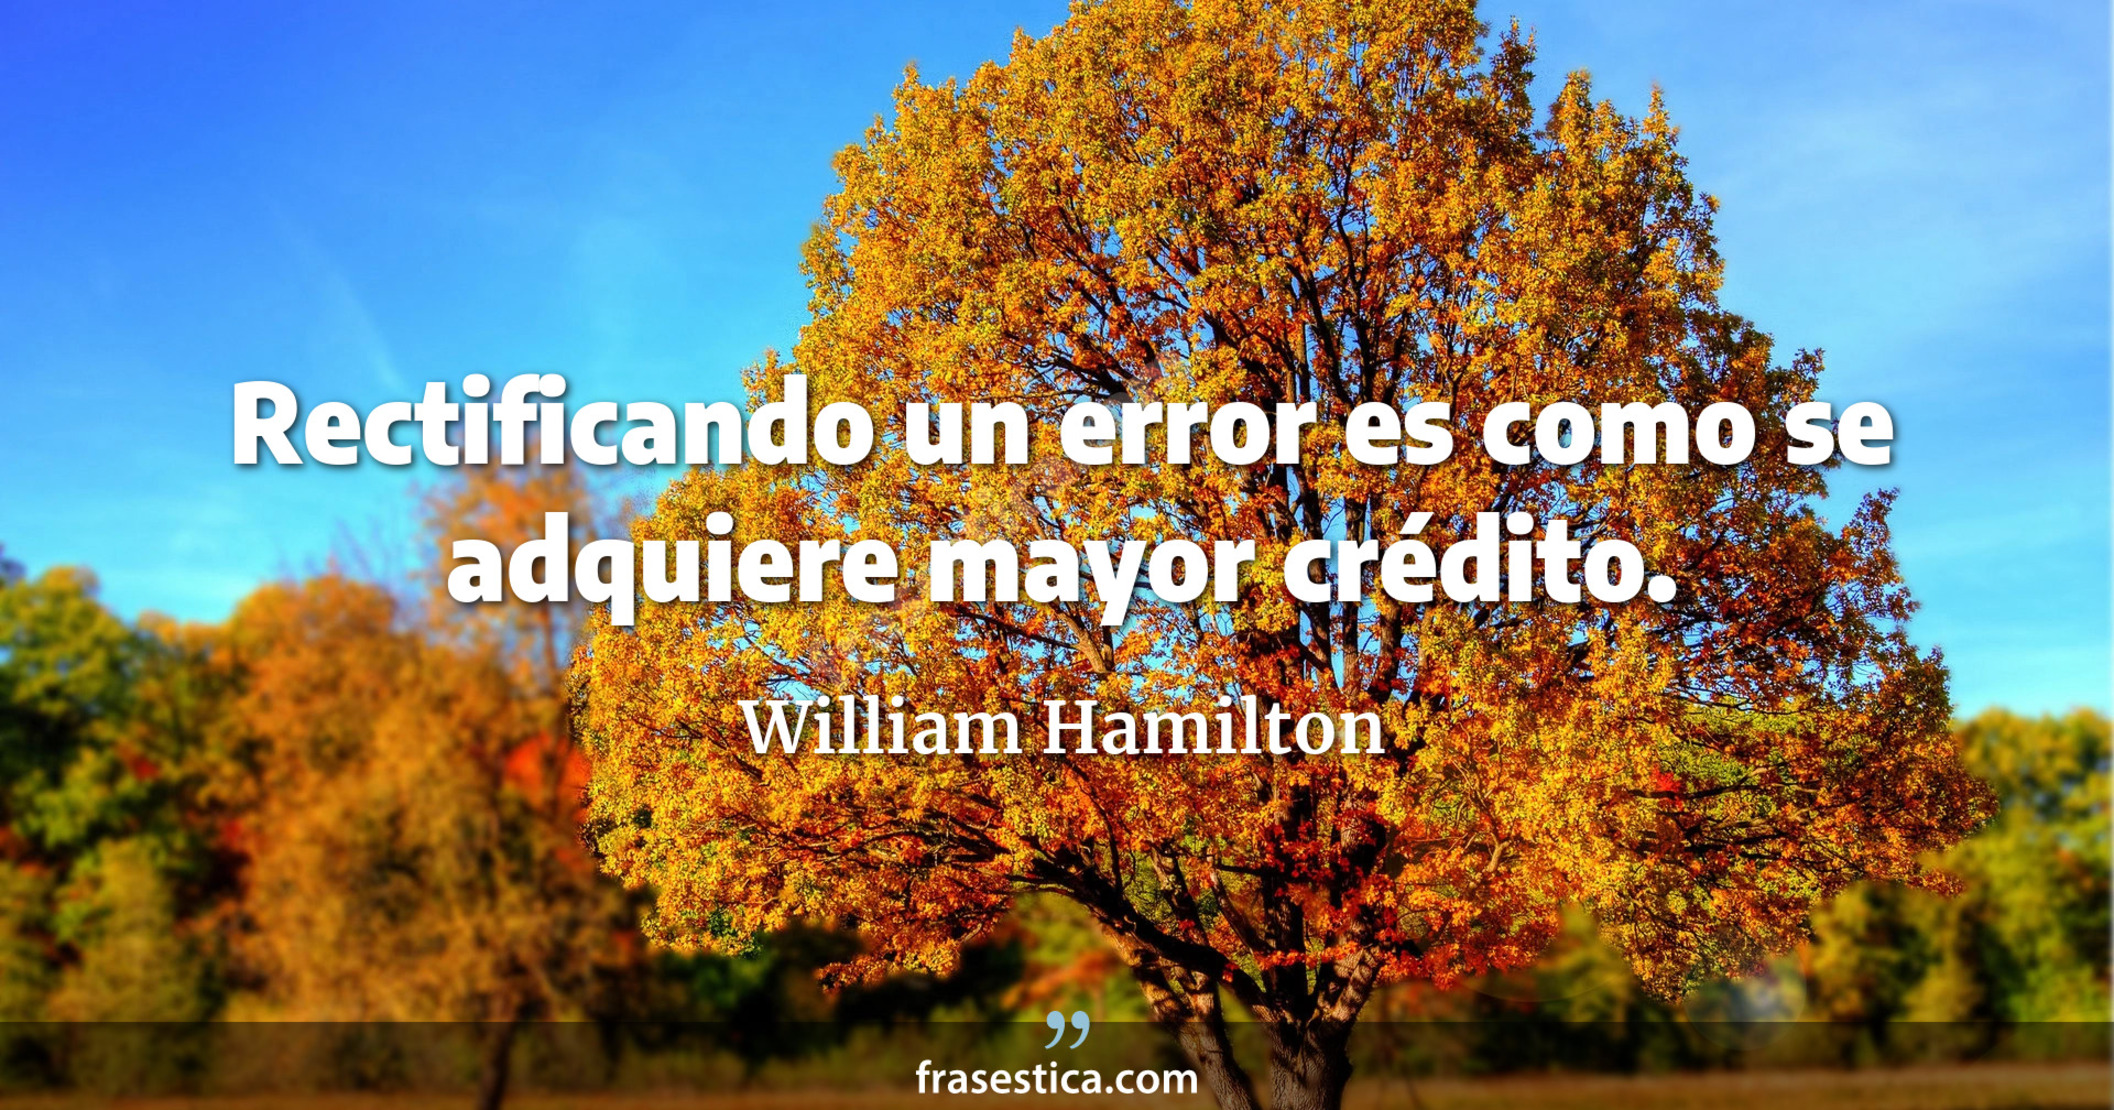 Rectificando un error es como se adquiere mayor crédito. - William Hamilton